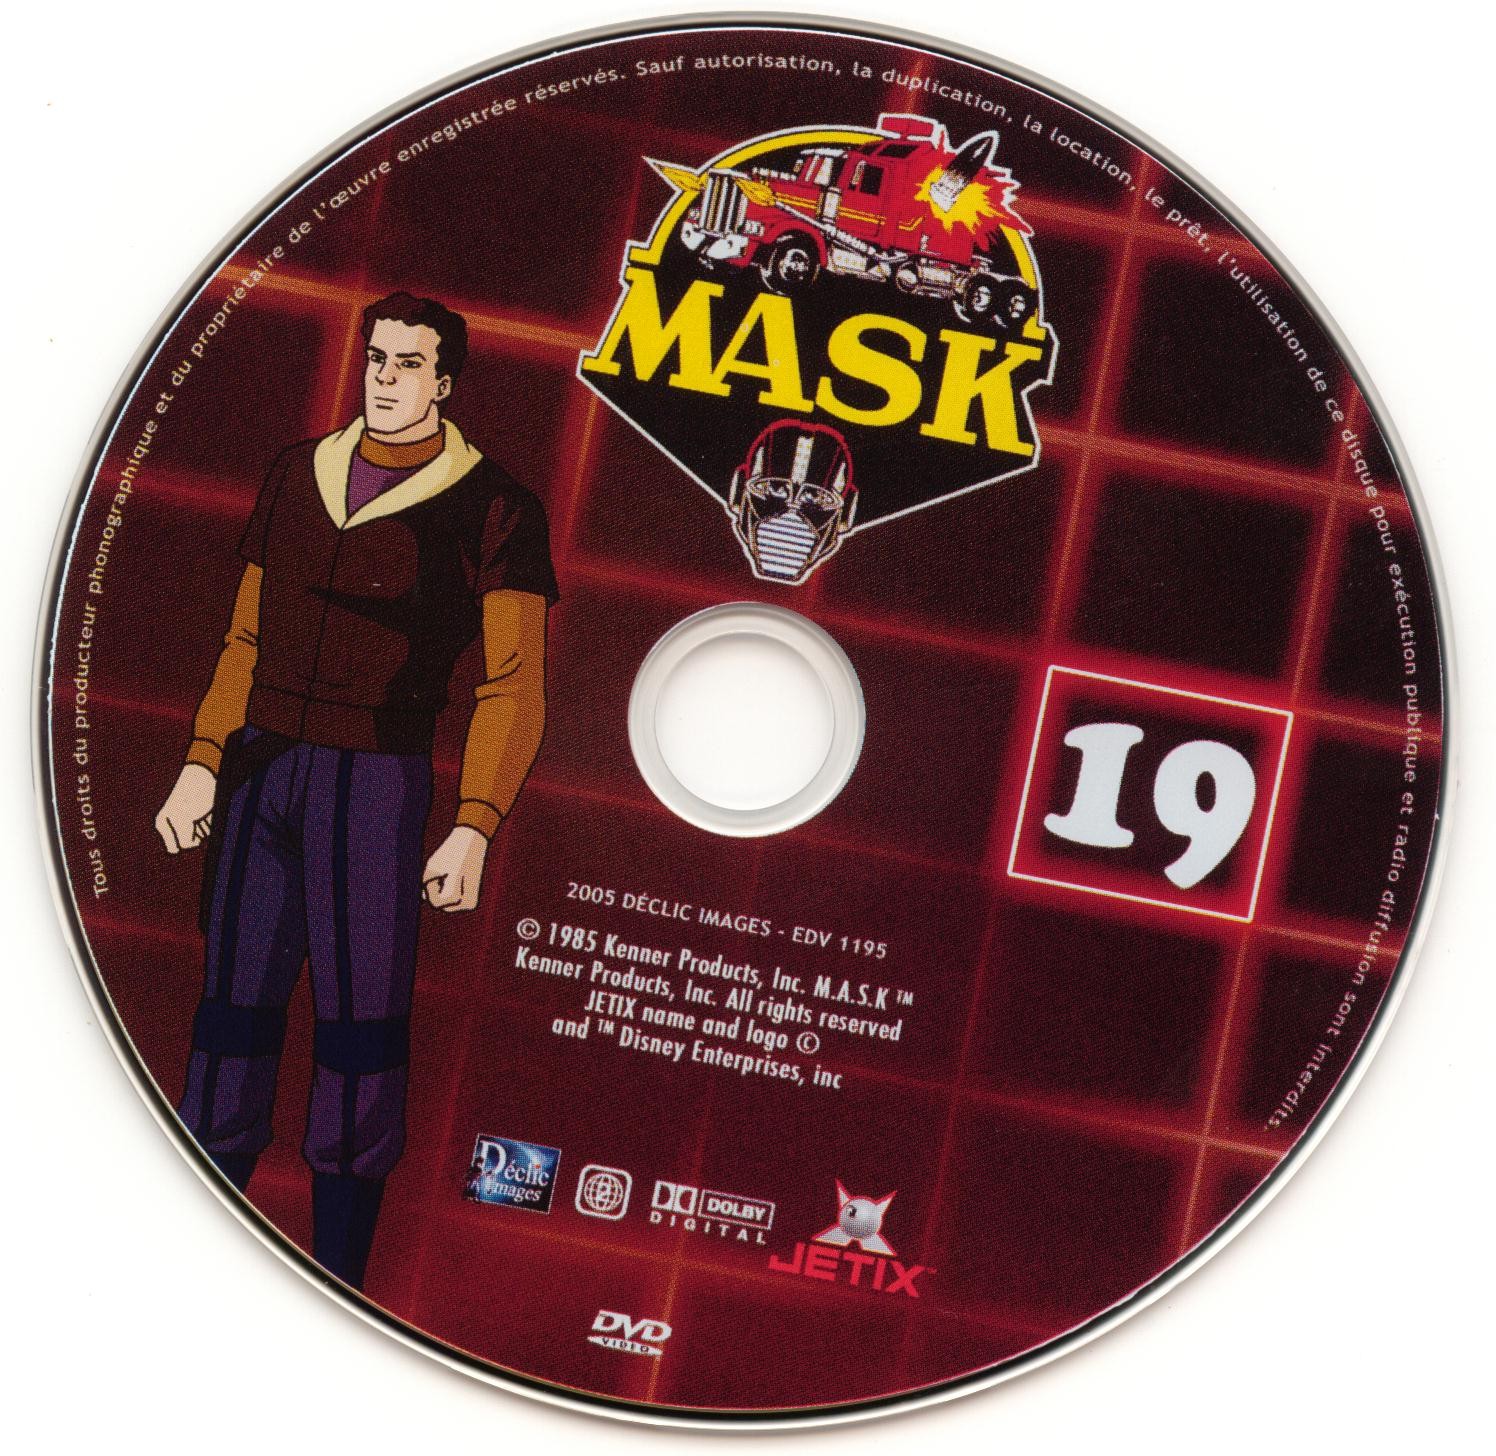 Mask vol 19